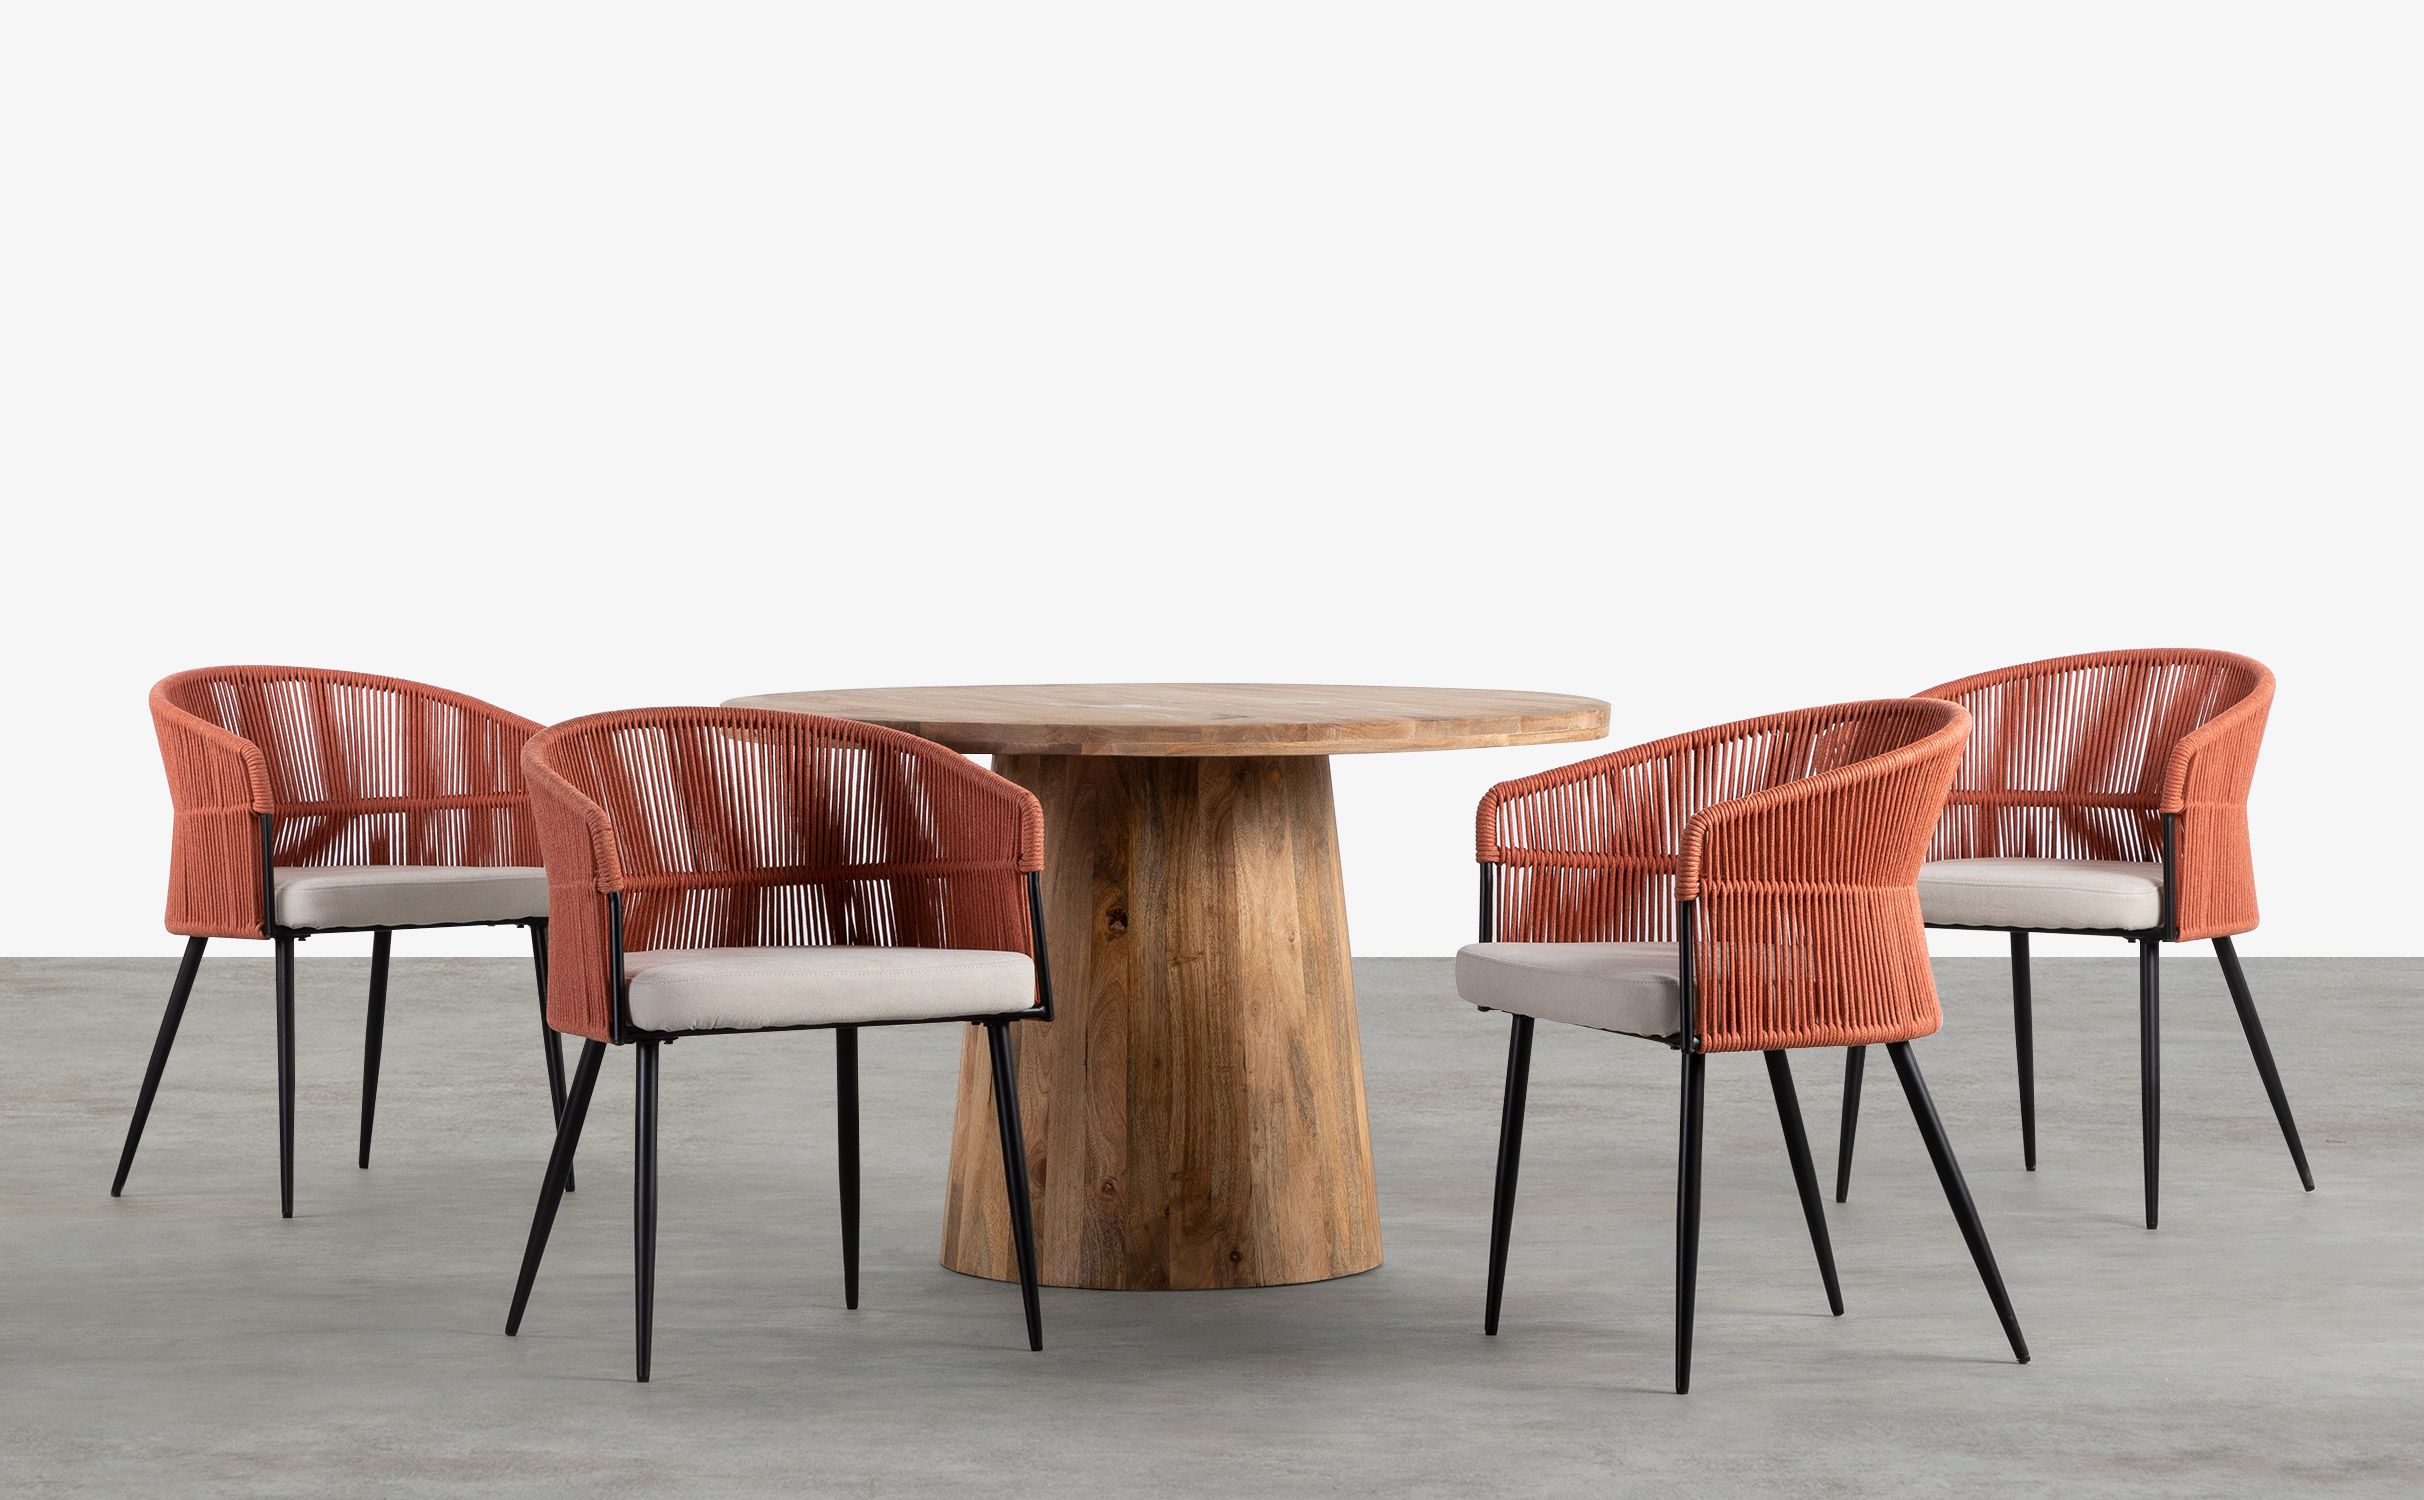 https://cdn.themasie.com/fr/2254231/set-de-table-ronde-en-bois-doran-et-4-chaises-en-corde-et-tissu-drean.jpg